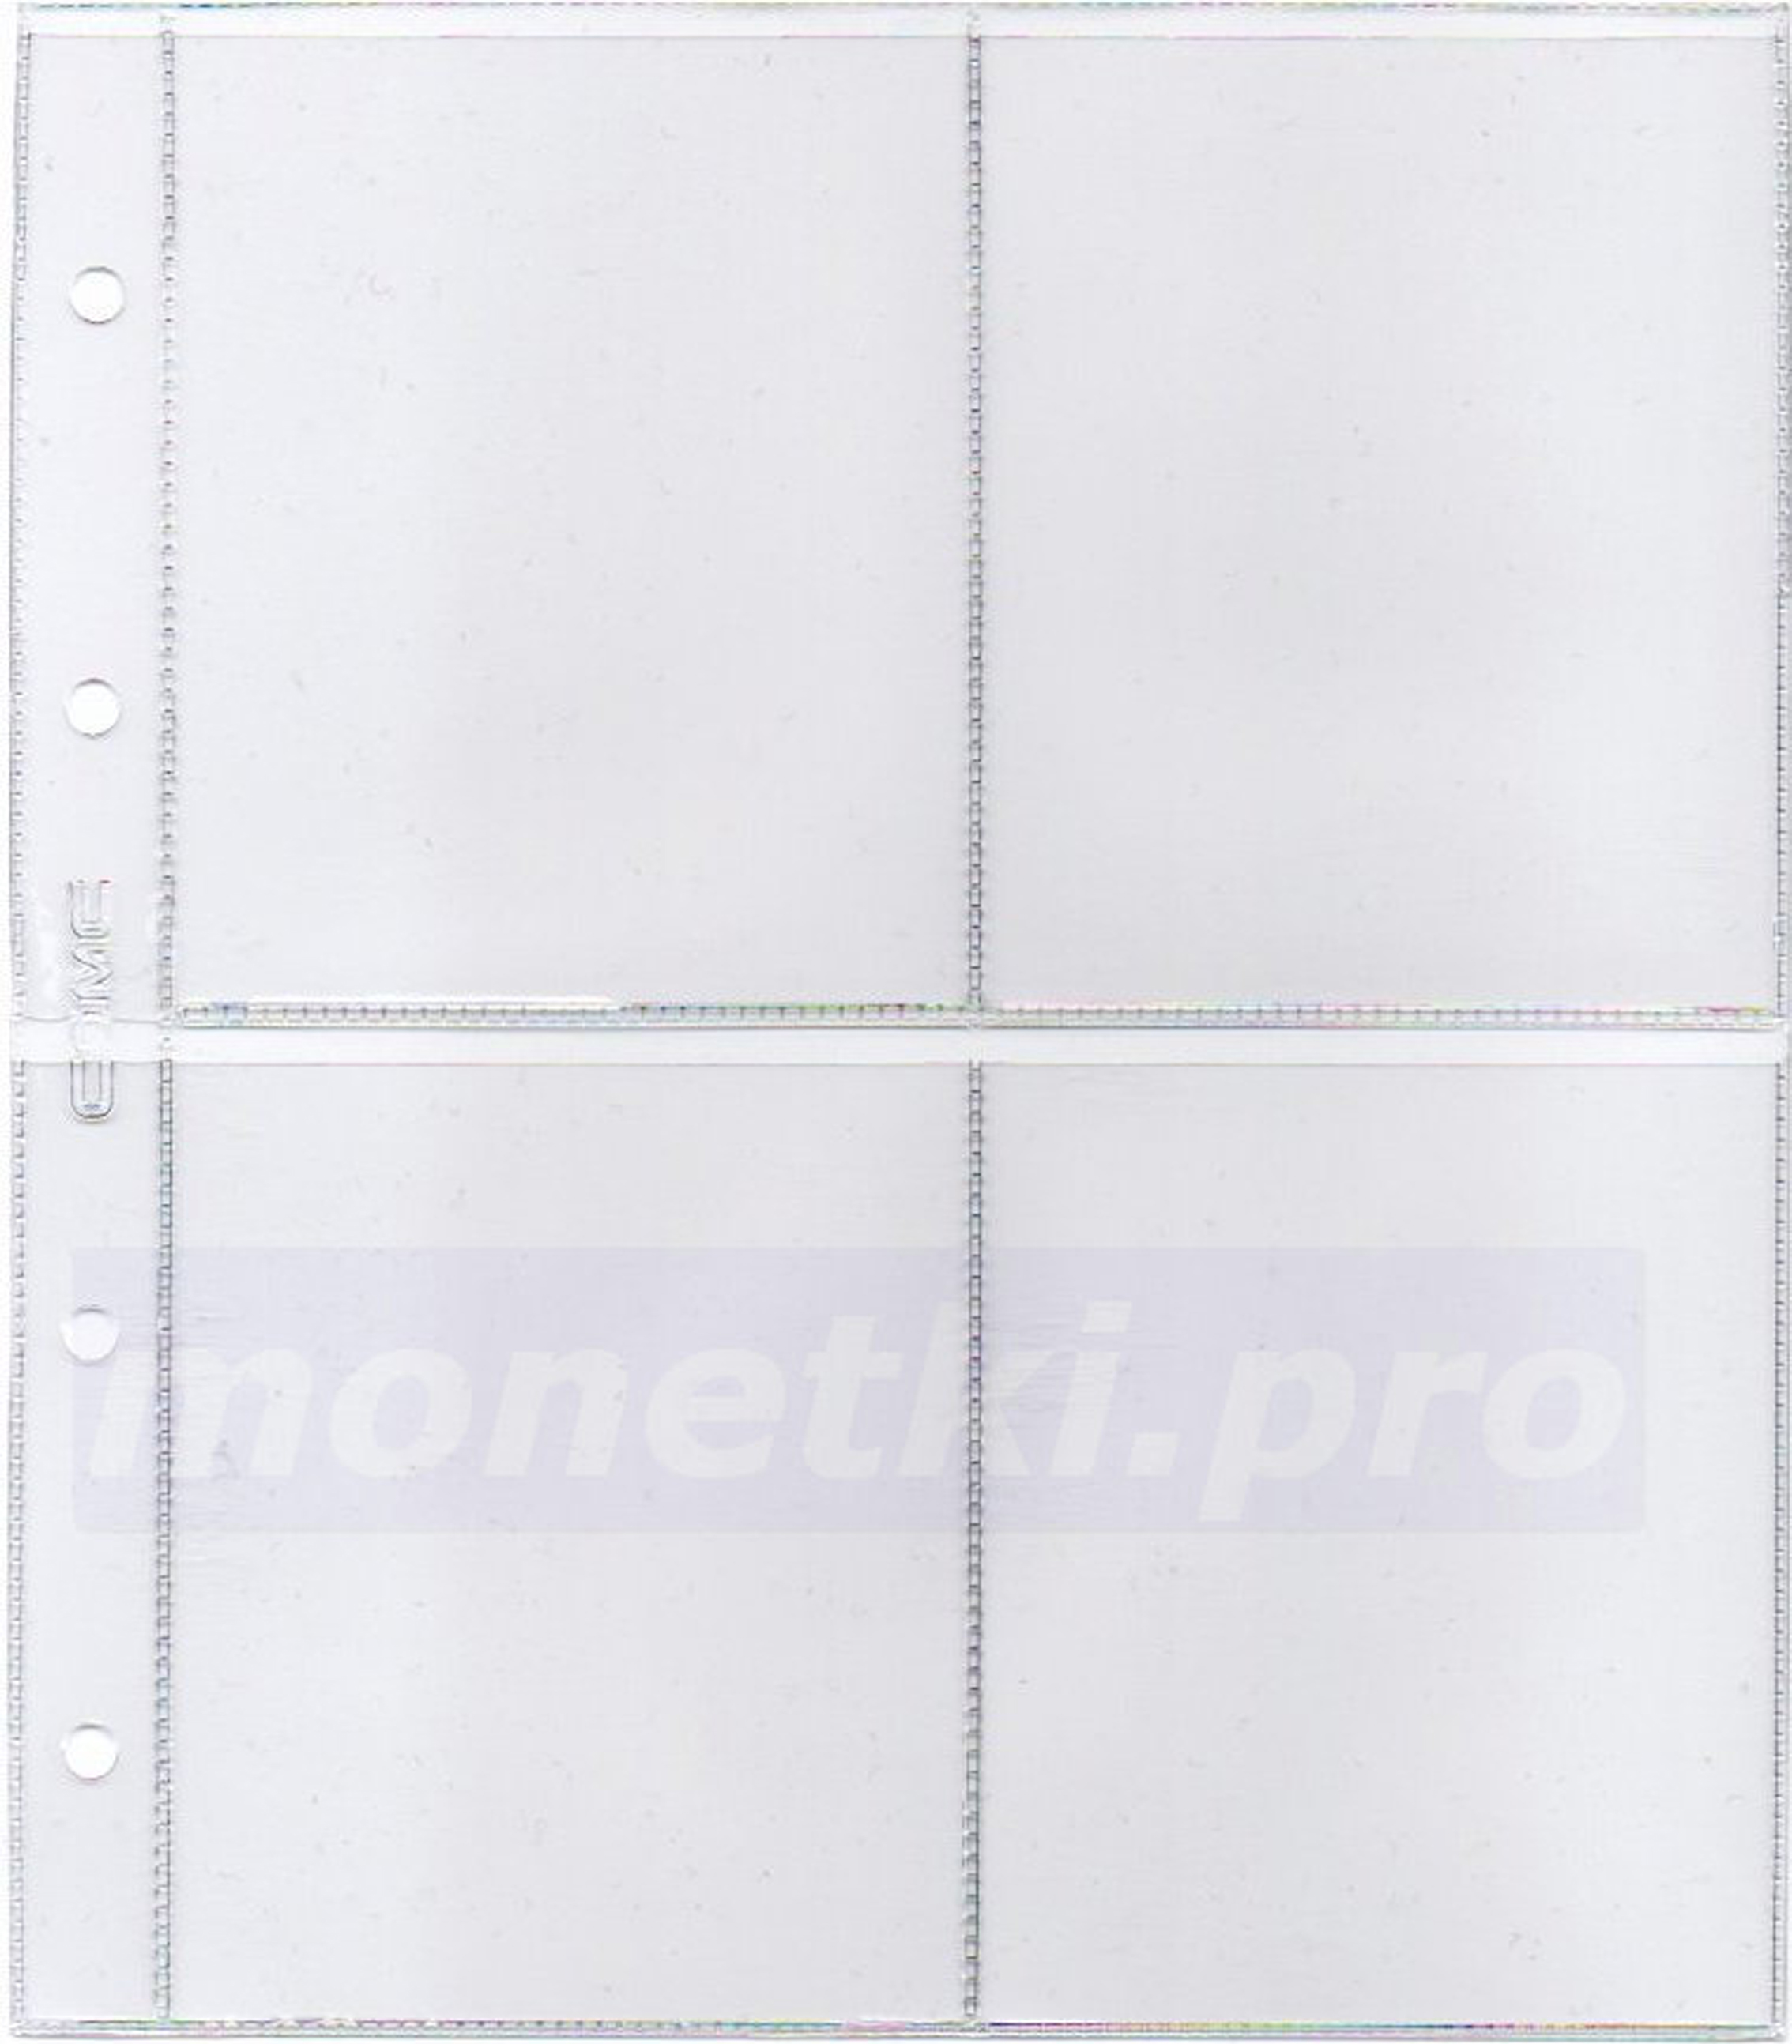 Купить листы для бон на 4 вертикальные ячейки размер кармана 85 х 105 мм формат Нумис (Numis), фото 